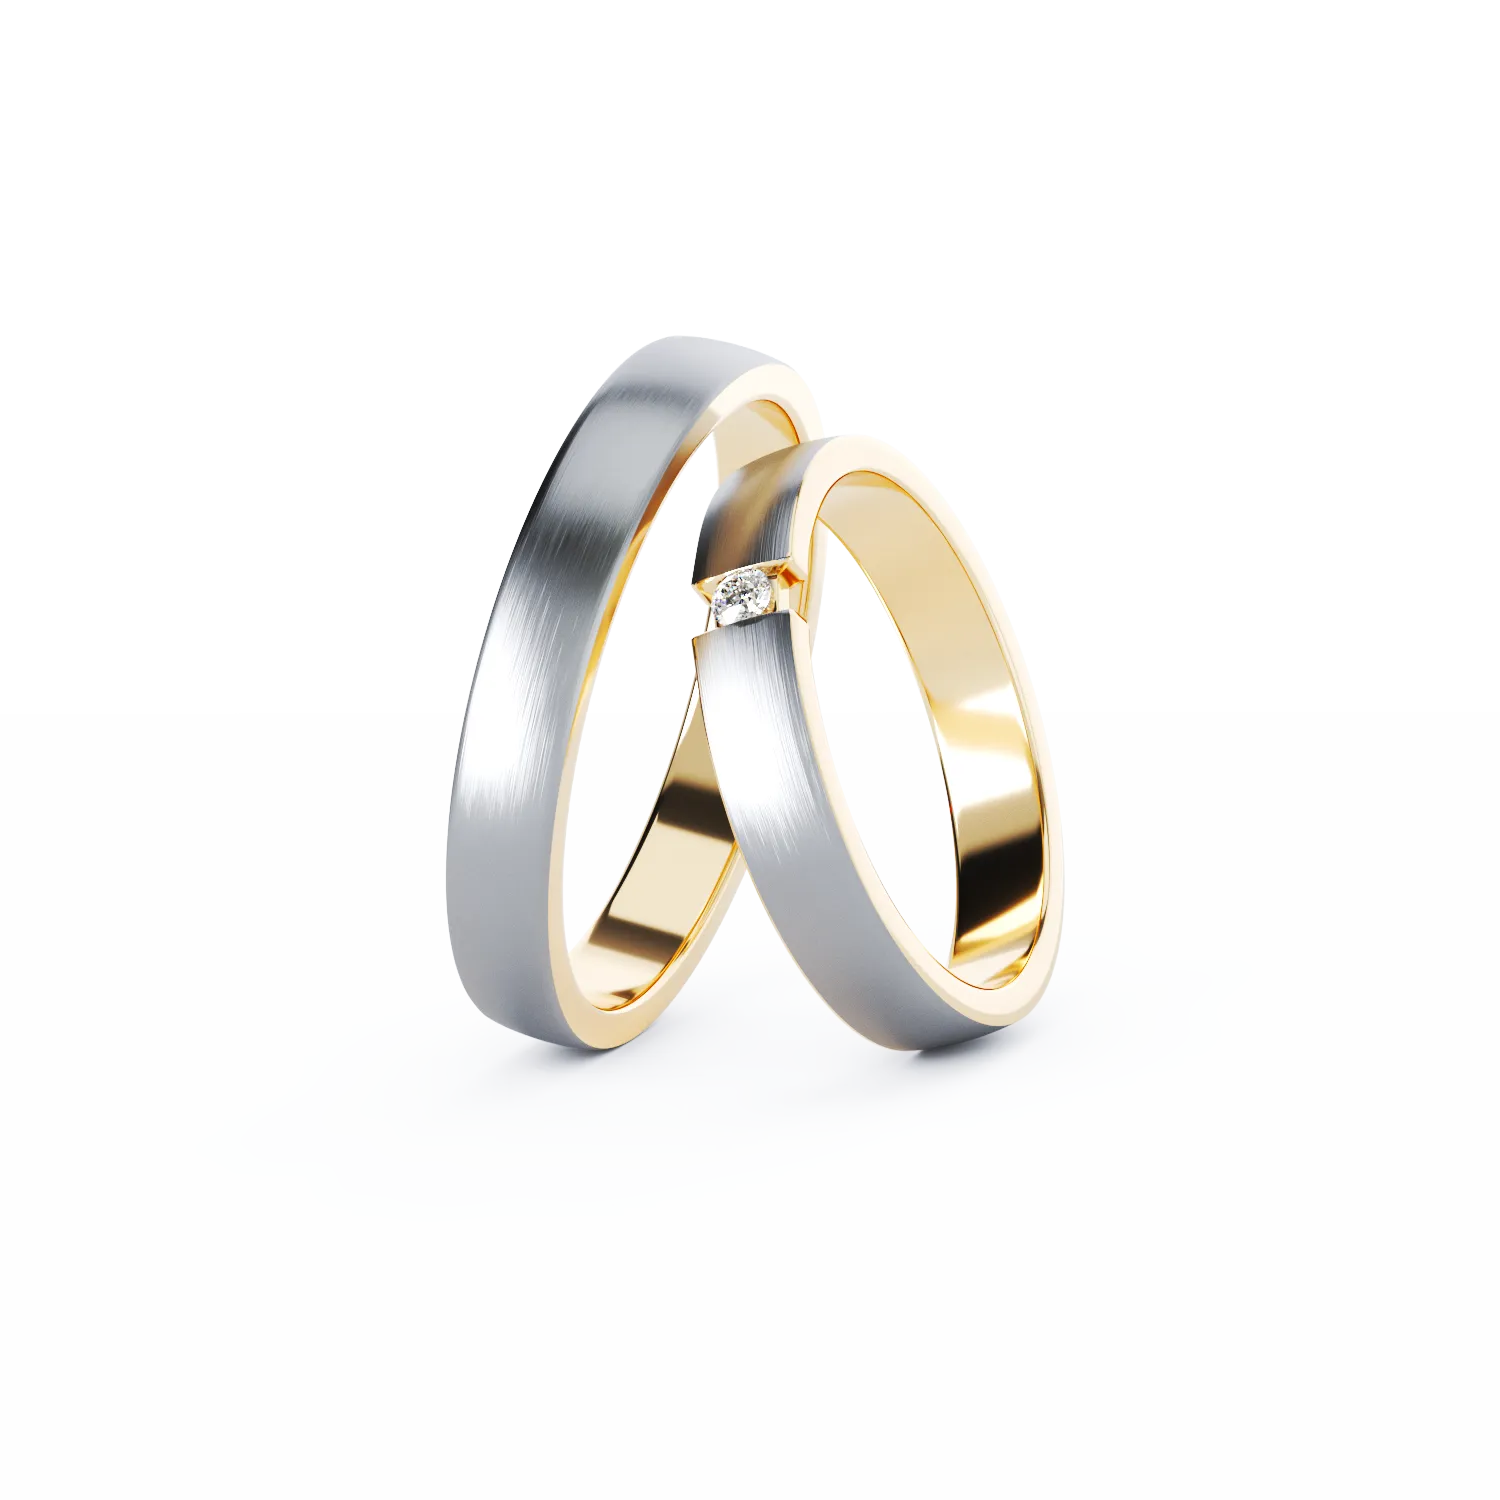 BESPOKE gold wedding rings